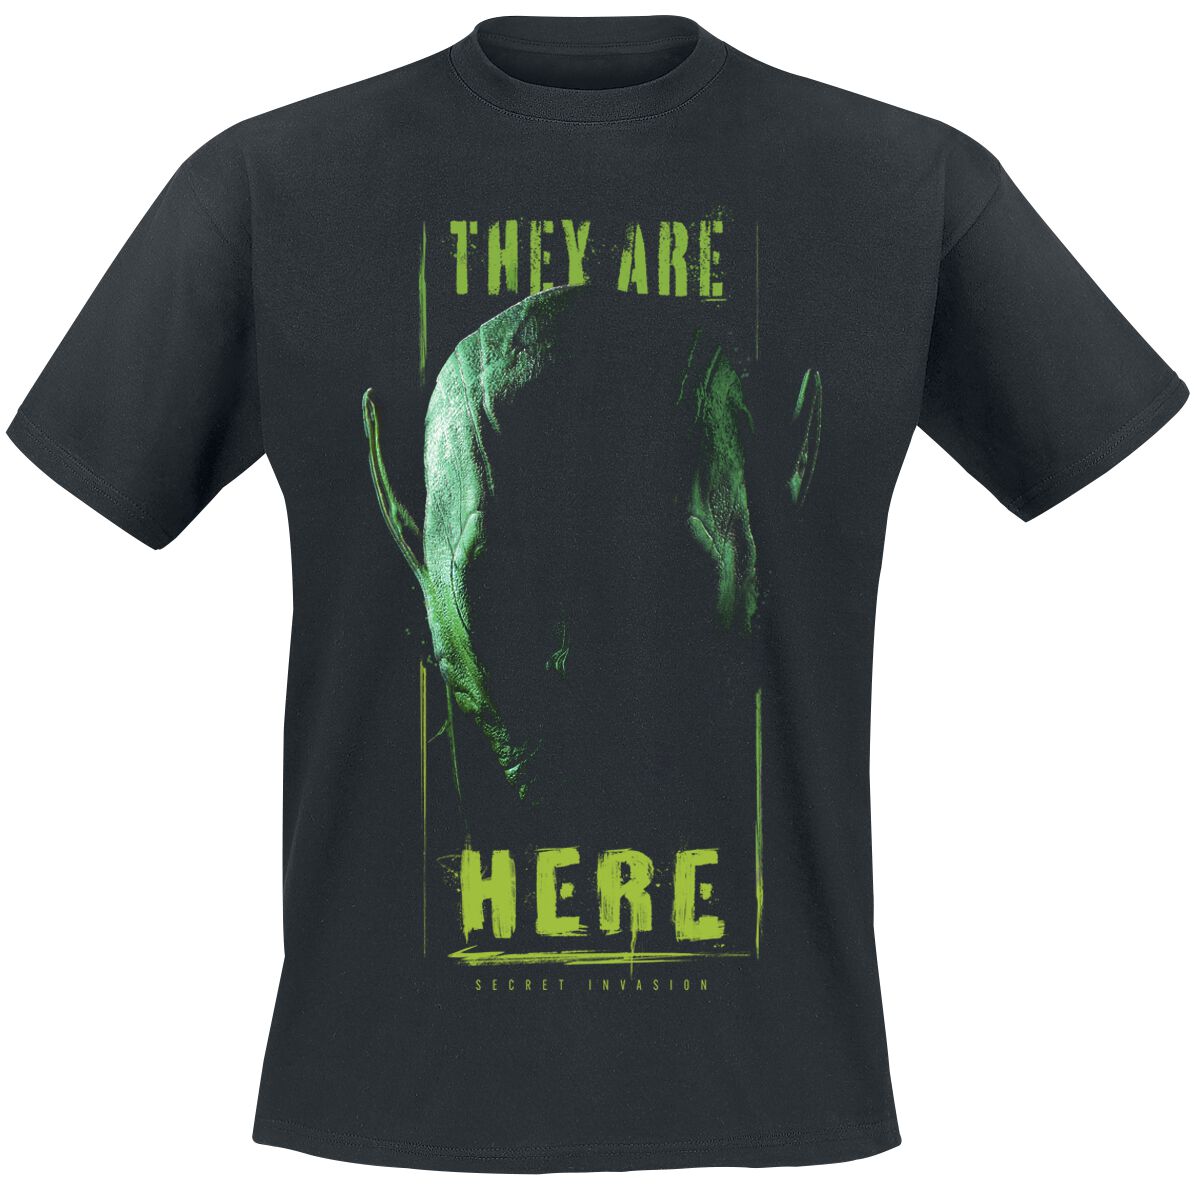 Secret Invasion - Marvel T-Shirt - They Are Here - S bis XXL - für Männer - Größe XL - schwarz  - EMP exklusives Merchandise!